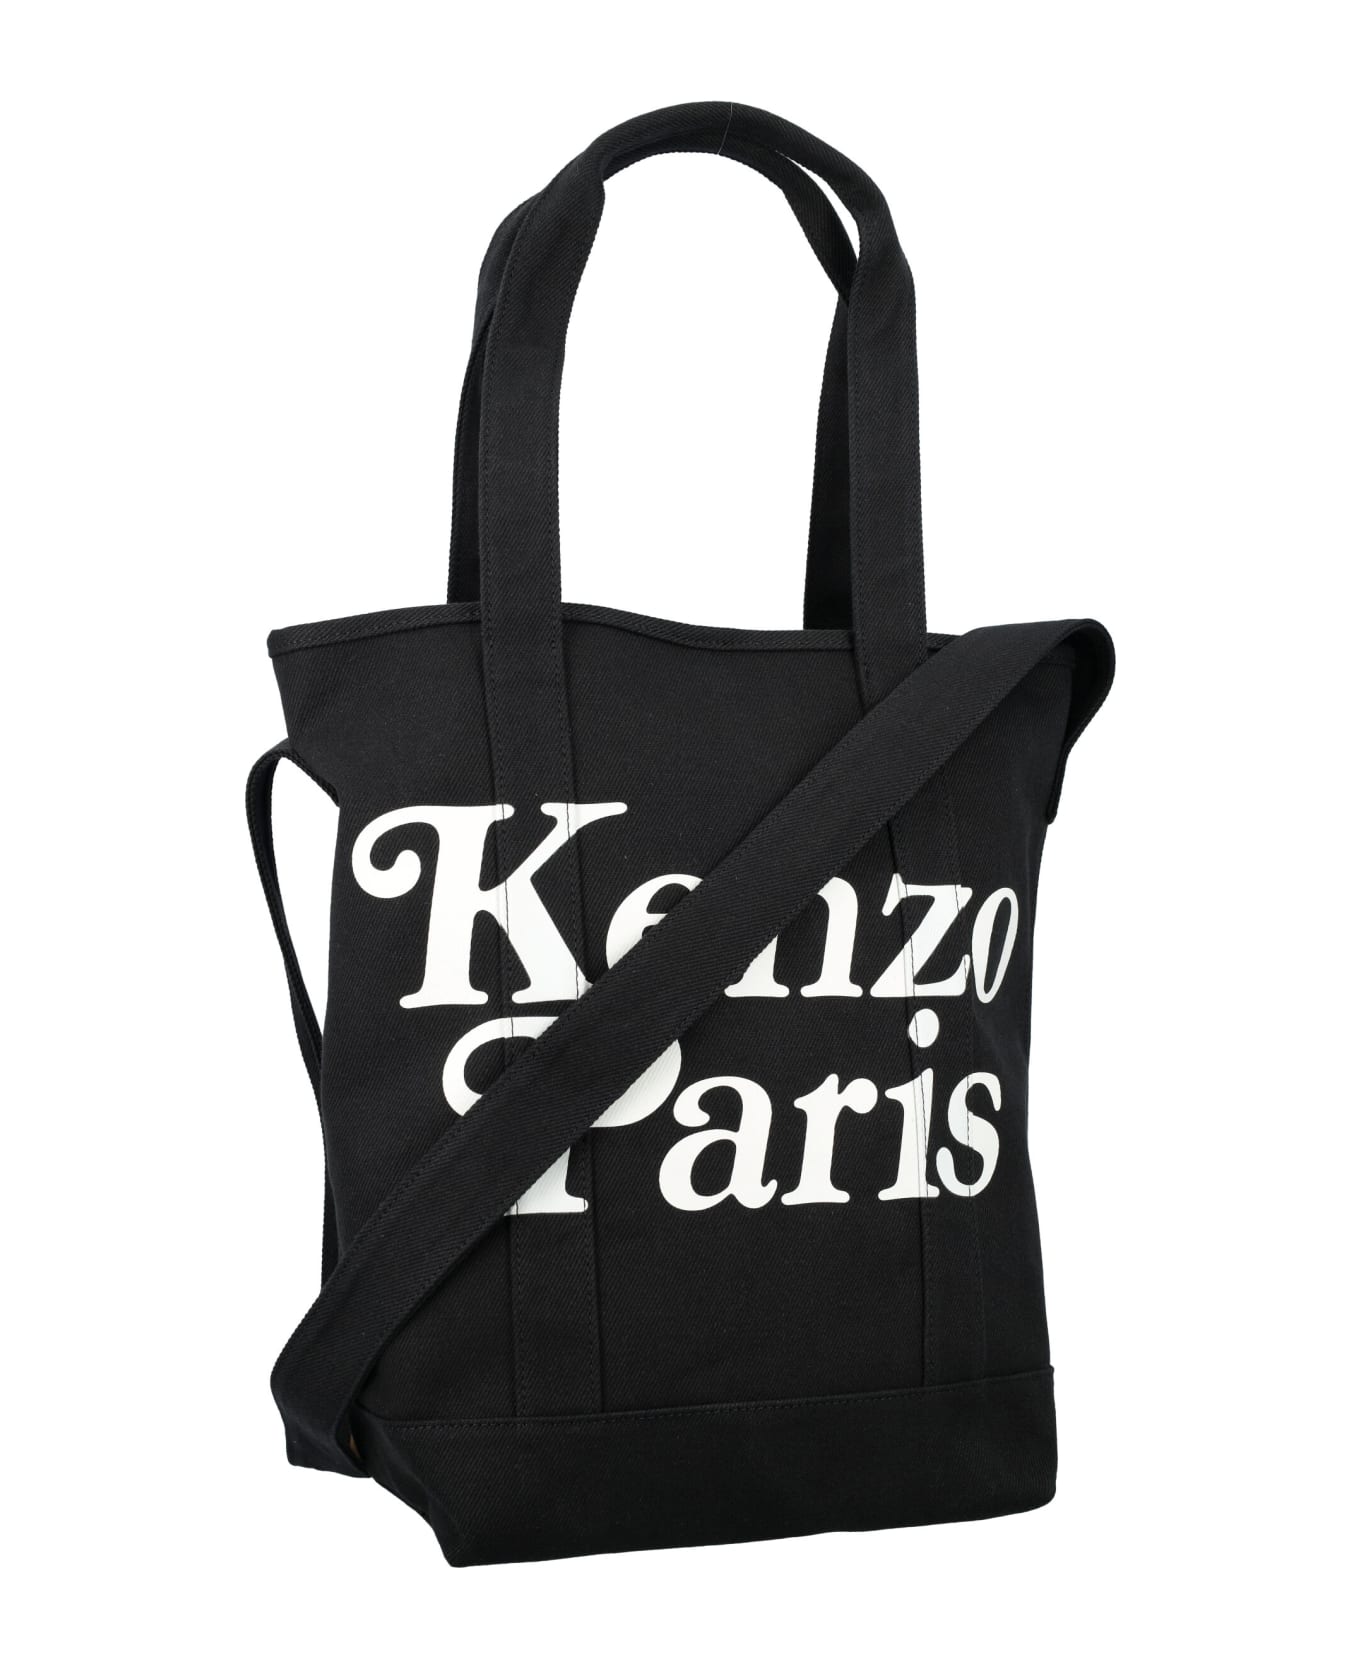 Kenzo Paris Tote Bag - BLACK